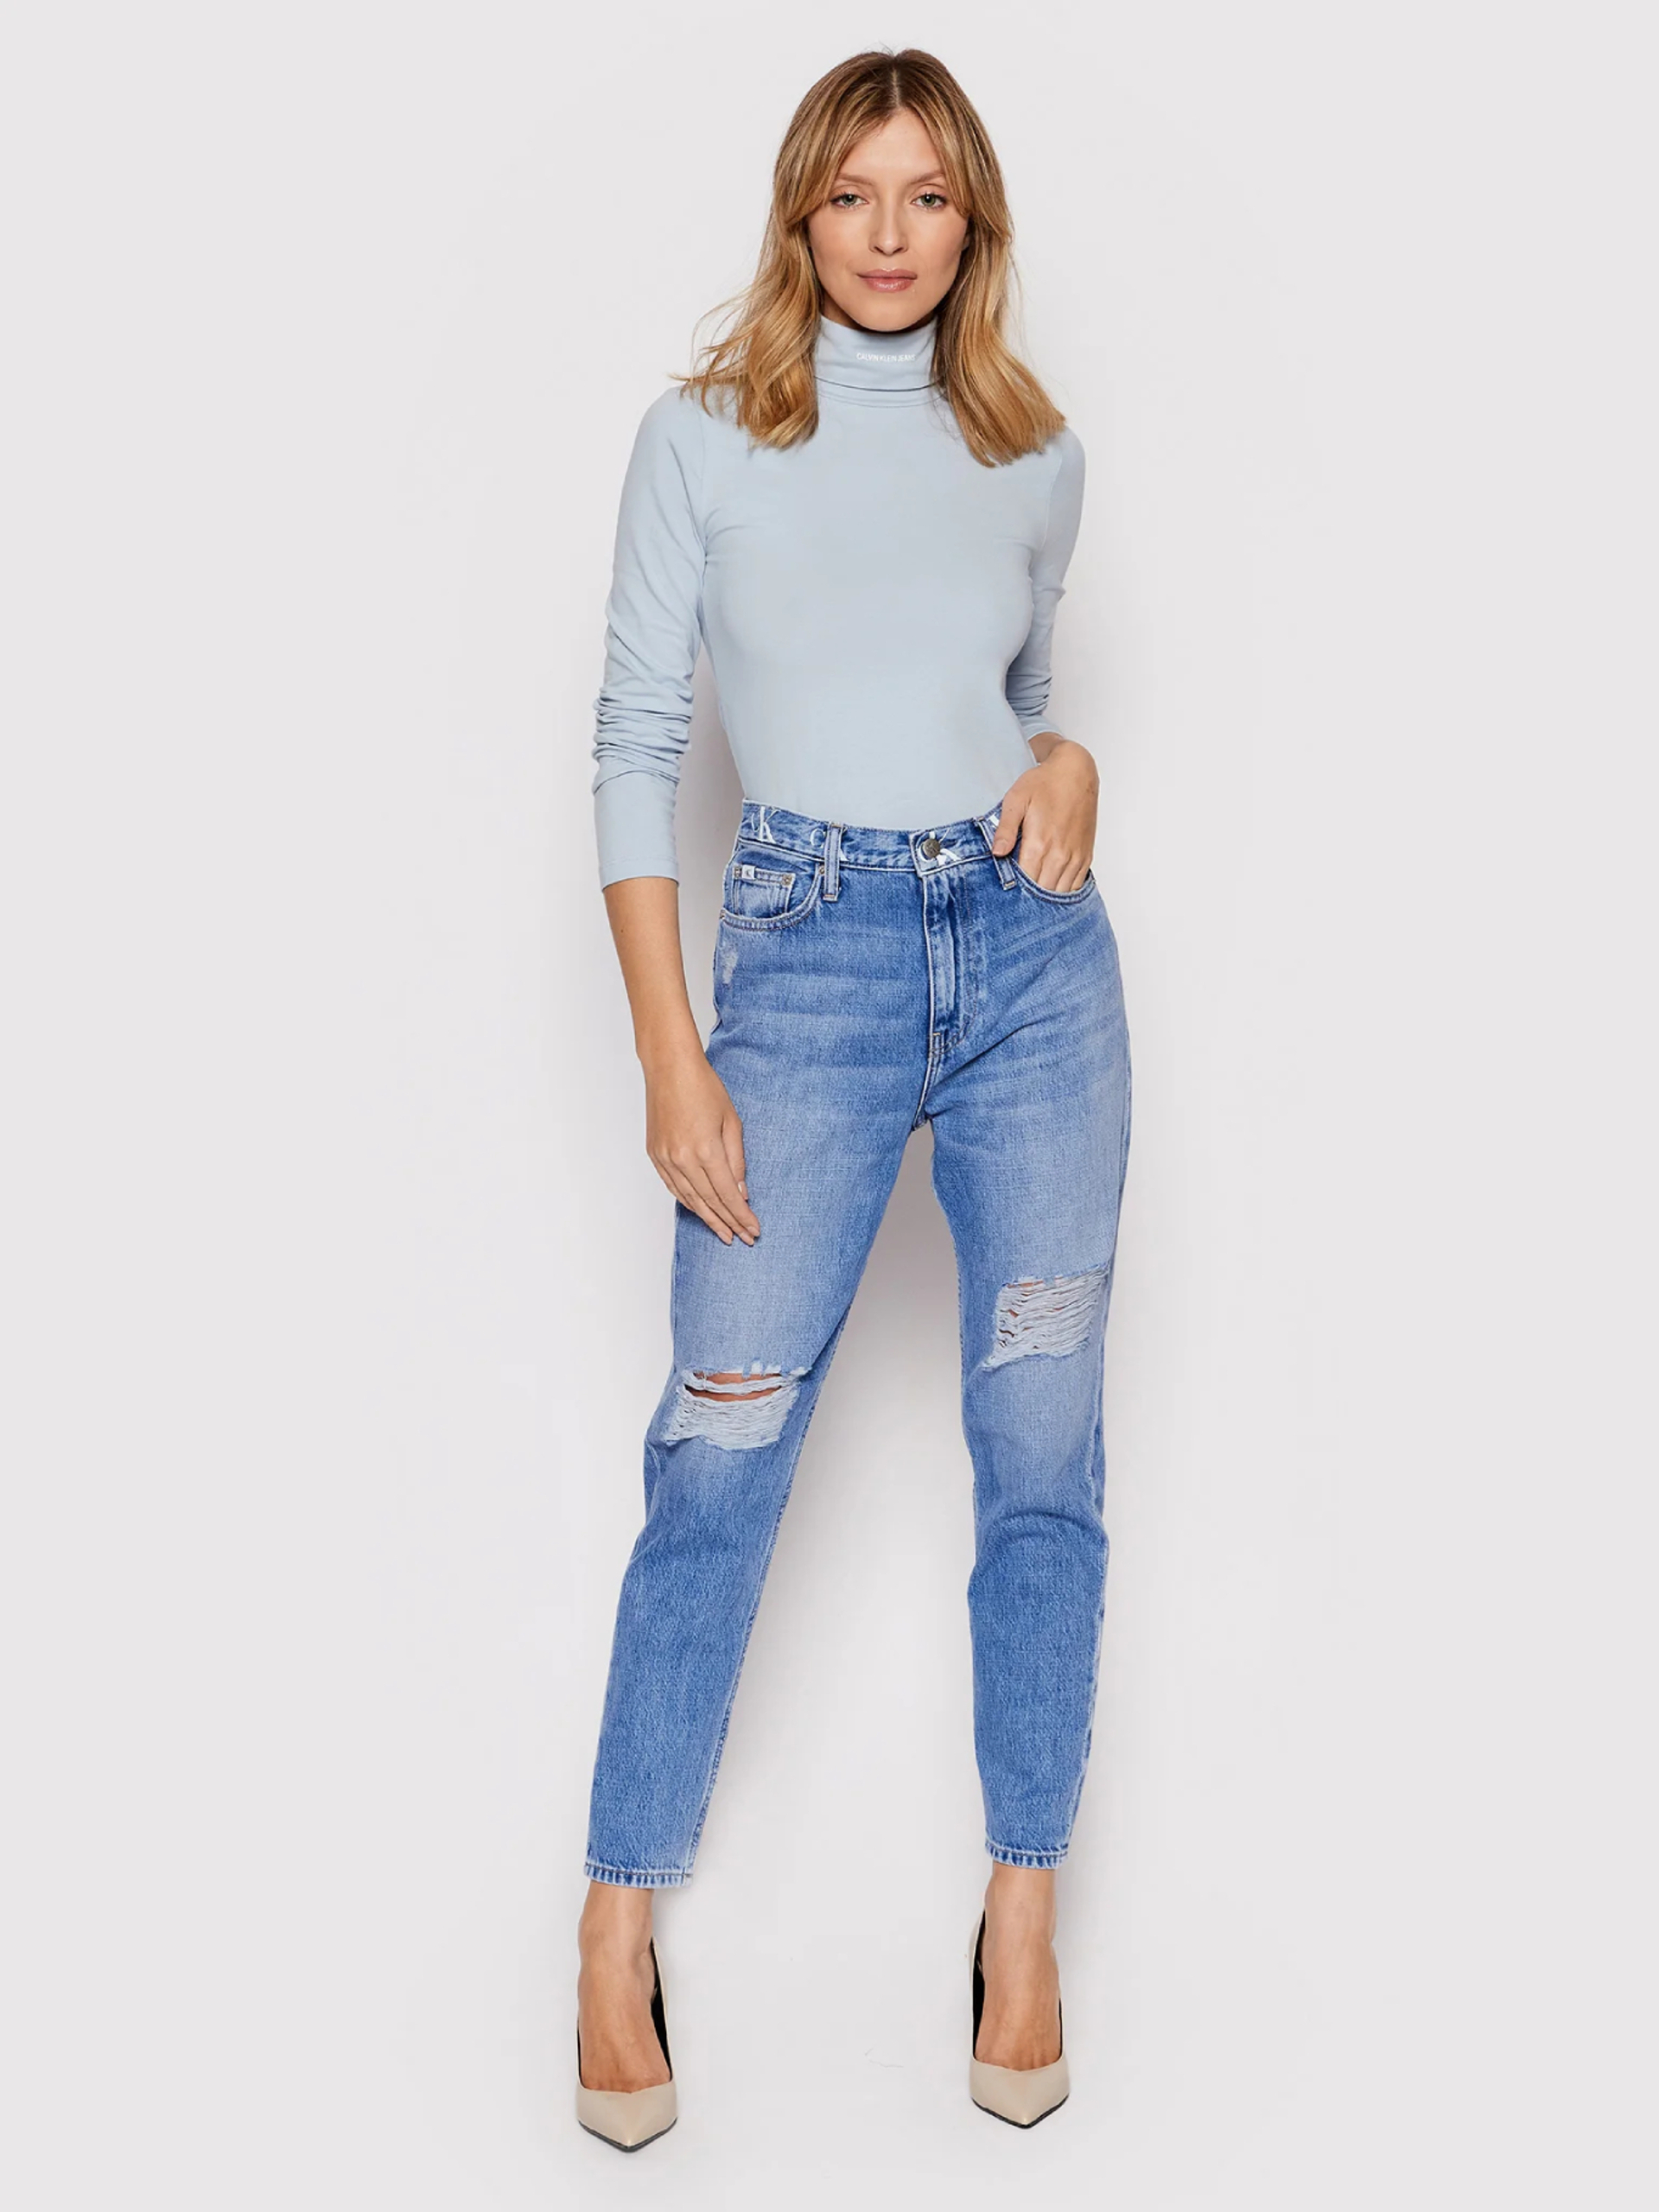 Calvin Klein dámske modré džínsy - 26/NI (1A4)